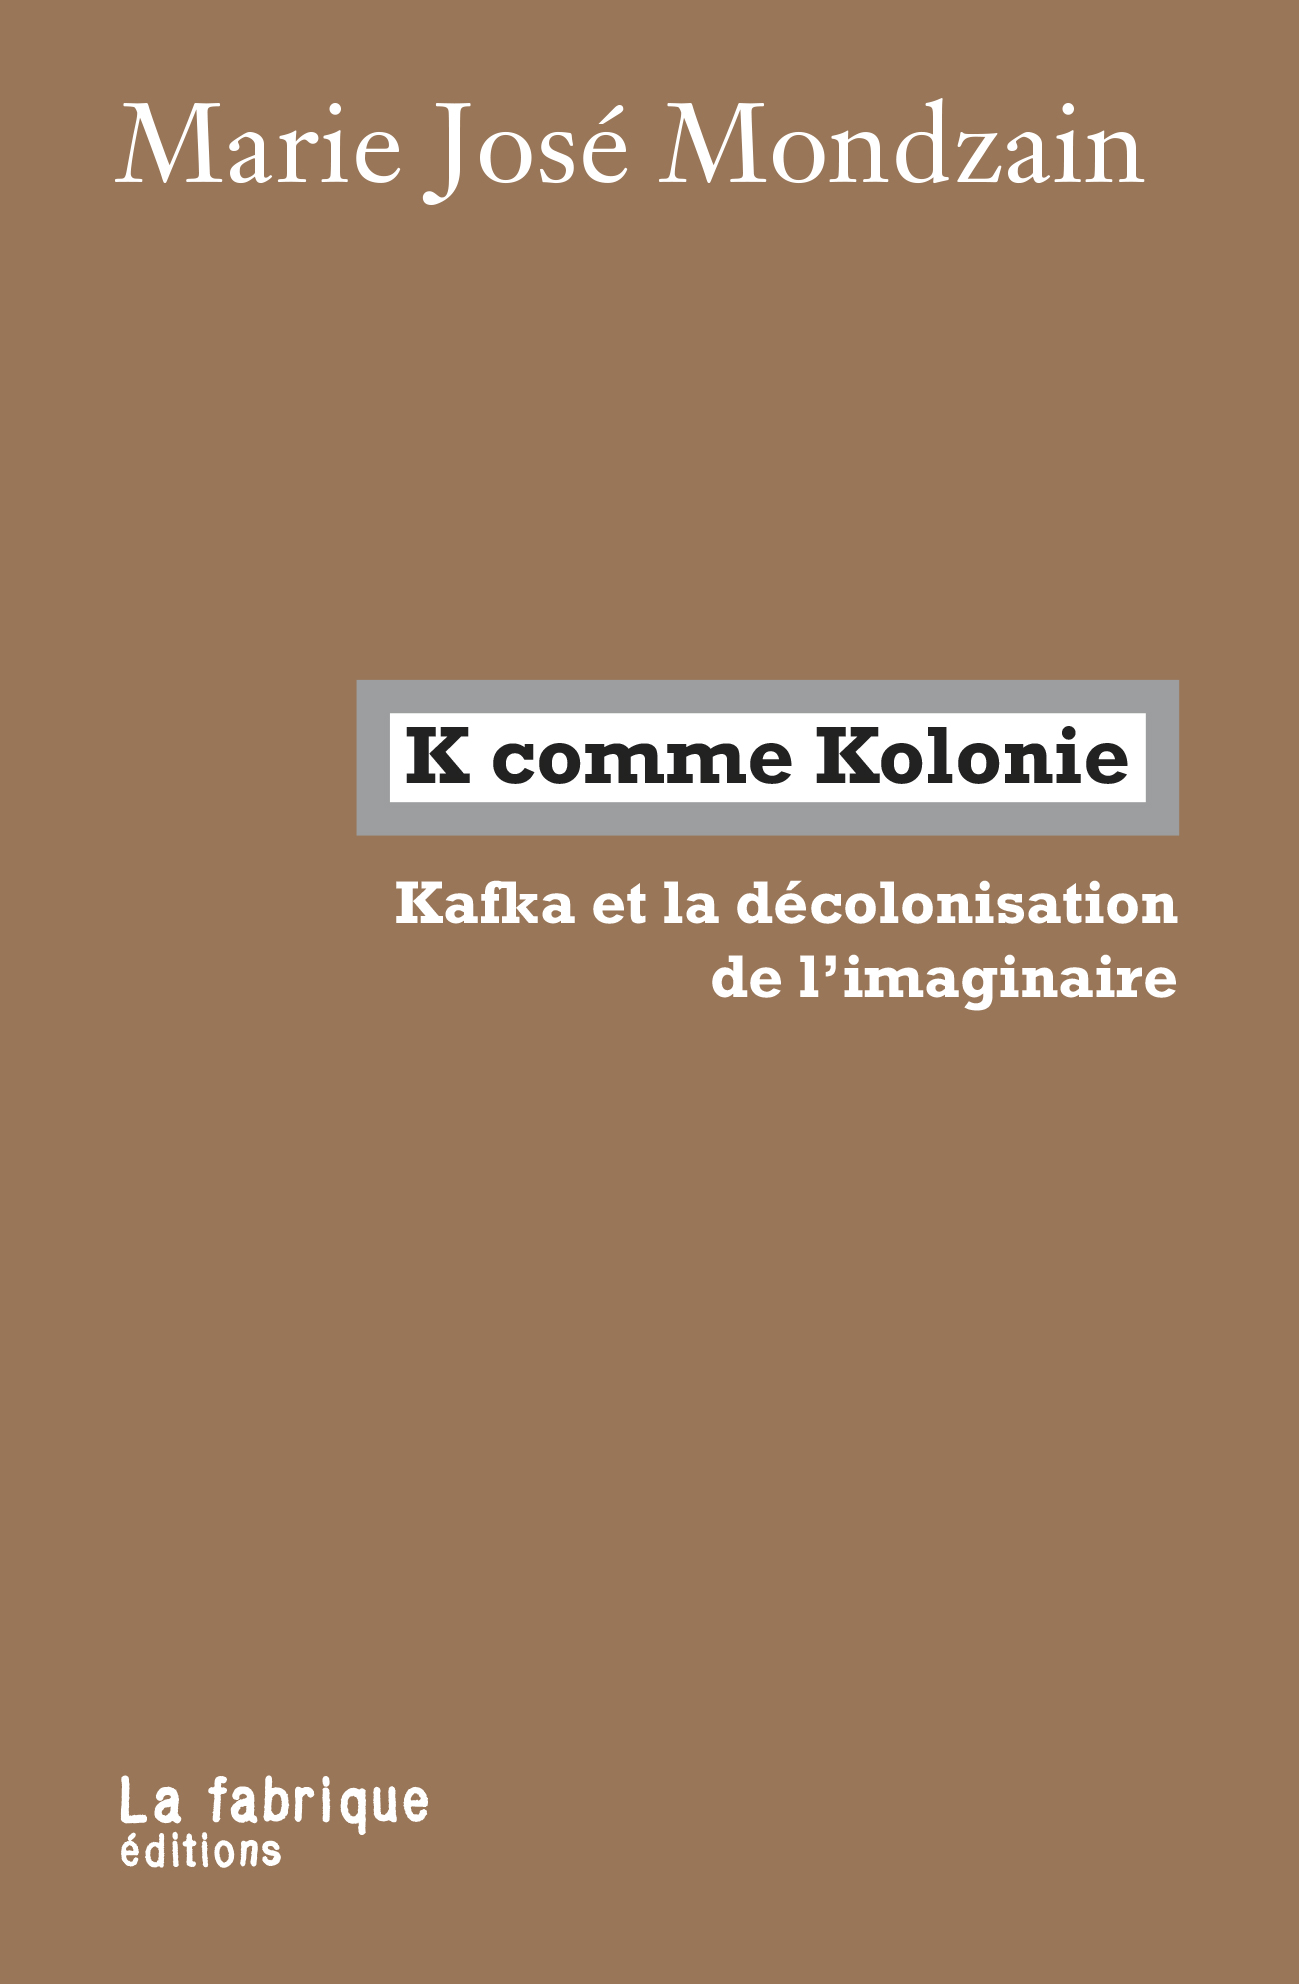 M.-J. Mondzain, K comme Kolonie. Kafka et la décolonisation de l'imaginaire